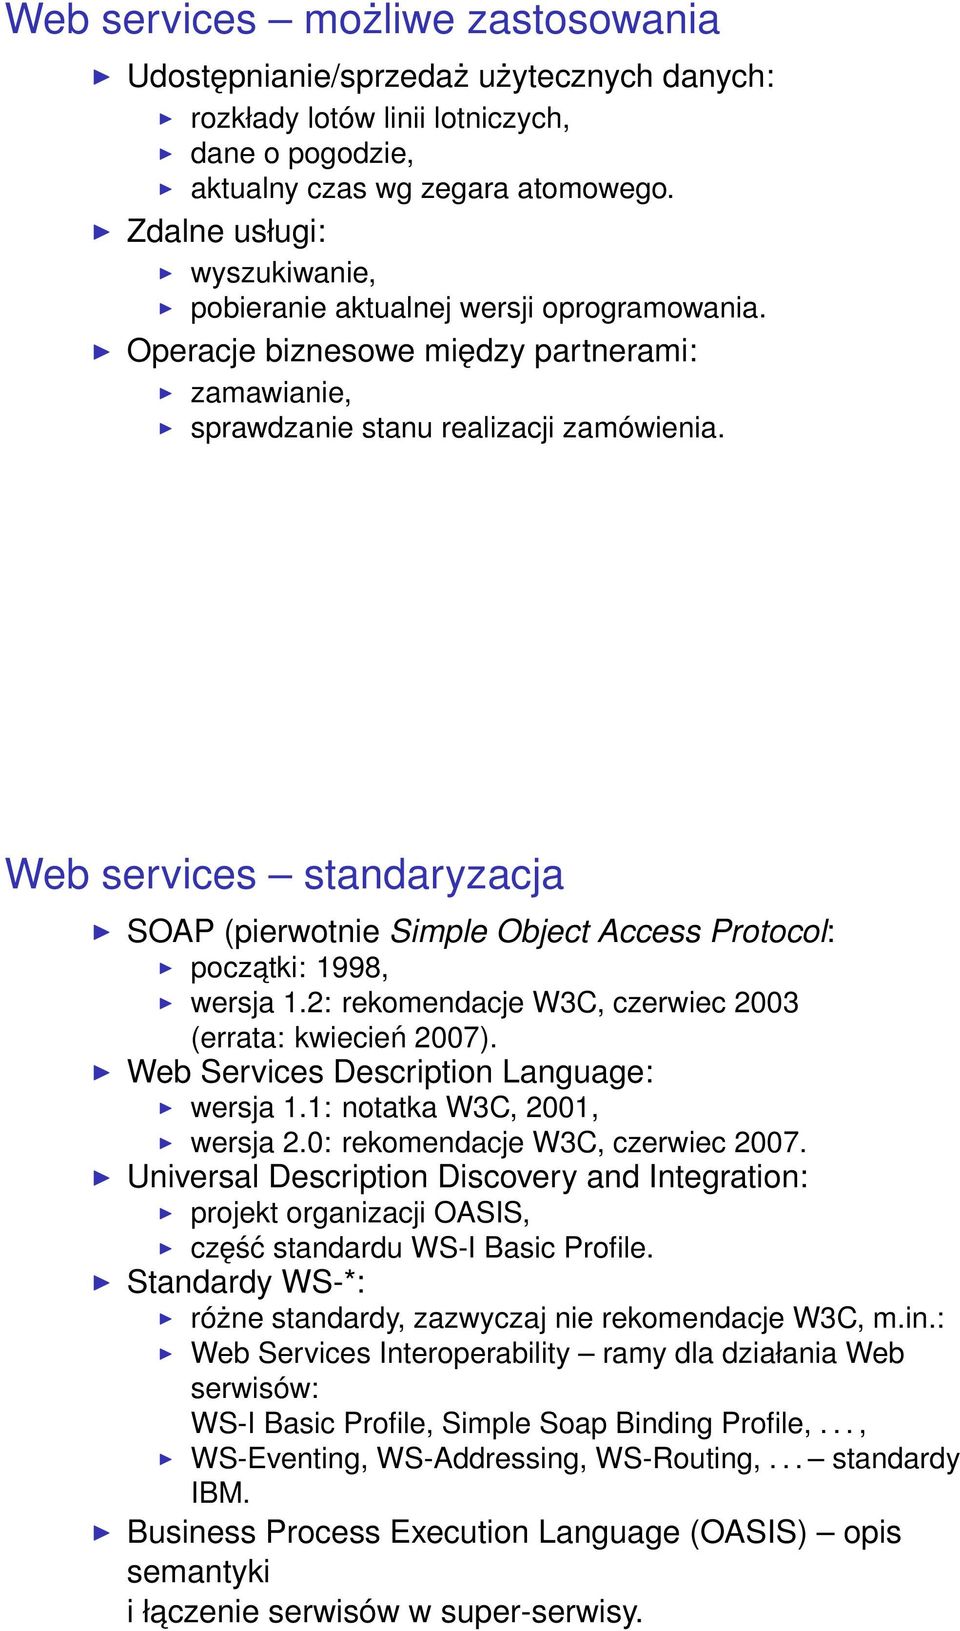 Web services standaryzacja SOAP (pierwotnie Simple Object Access Protocol: poczatki: 1998, wersja 1.2: rekomendacje W3C, czerwiec 2003 (errata: kwiecień 2007).